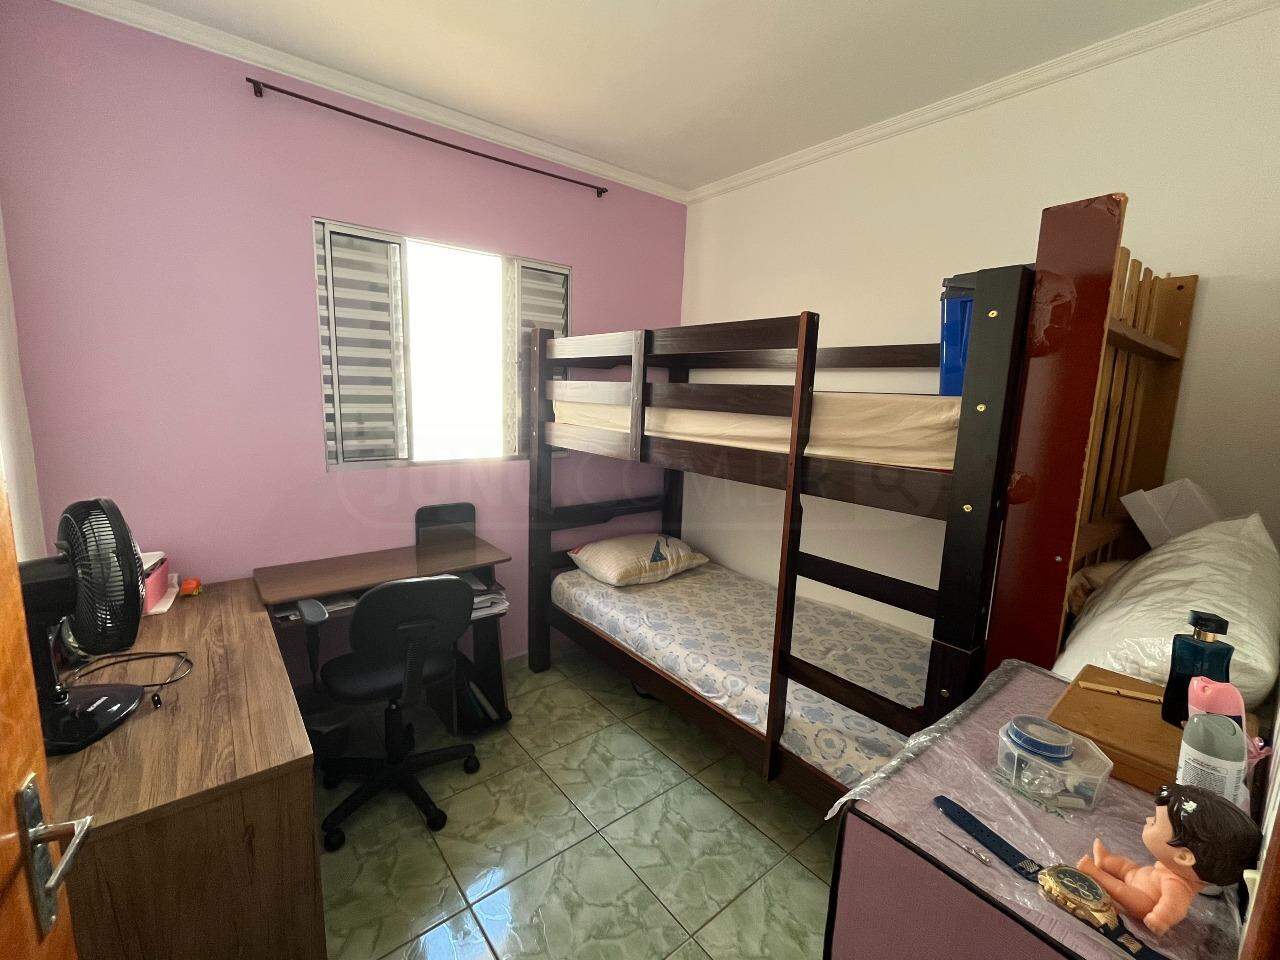 Casa à venda, 3 quartos, sendo 1 suíte, 2 vagas, no bairro Cecap em Piracicaba - SP